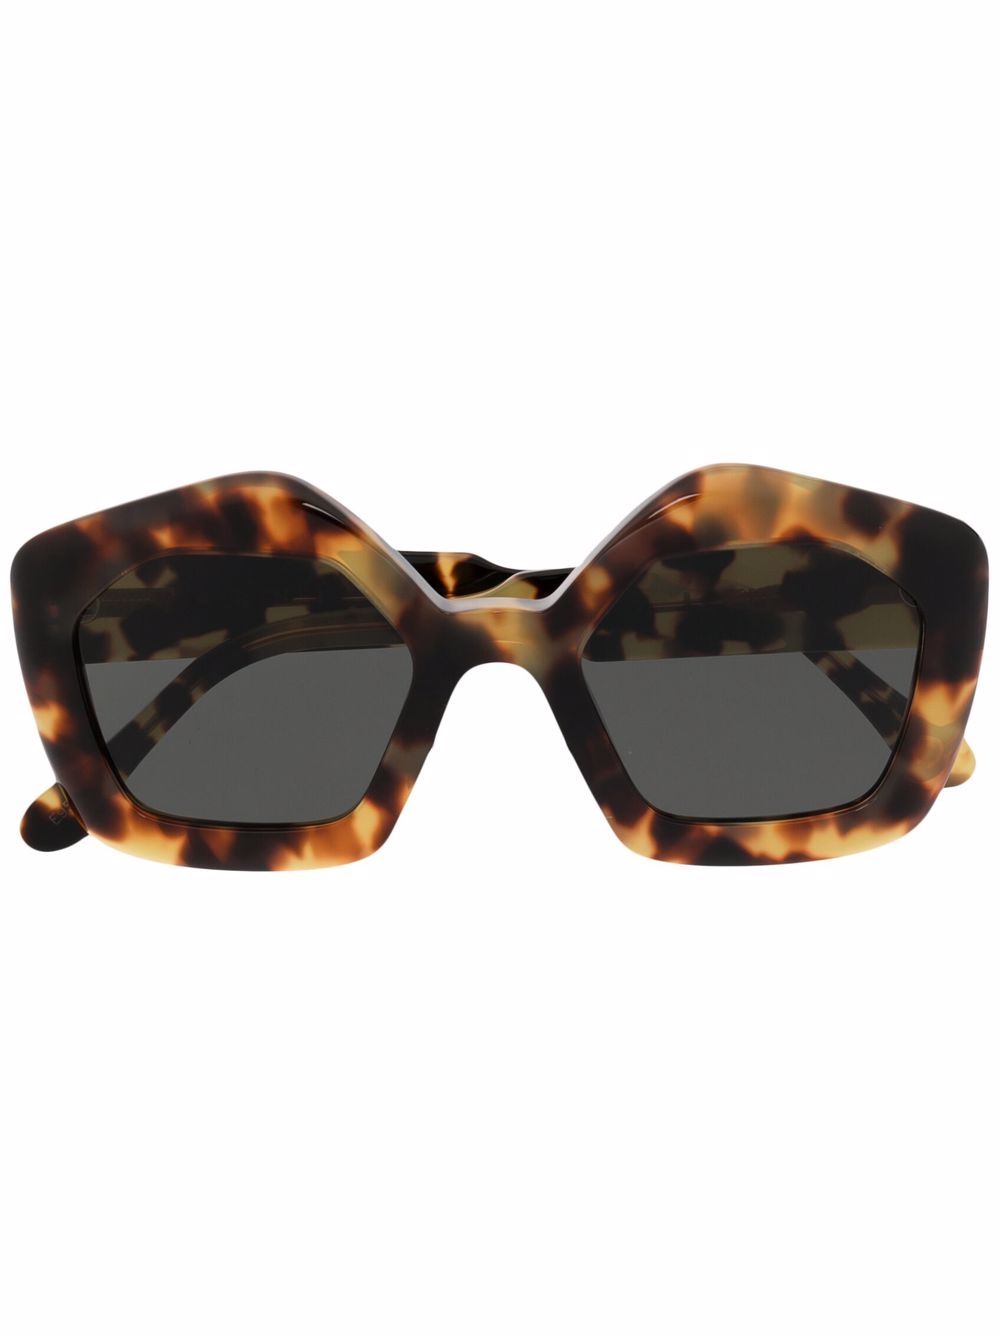 фото Marni eyewear солнцезащитные очки в оправе черепаховой расцветки